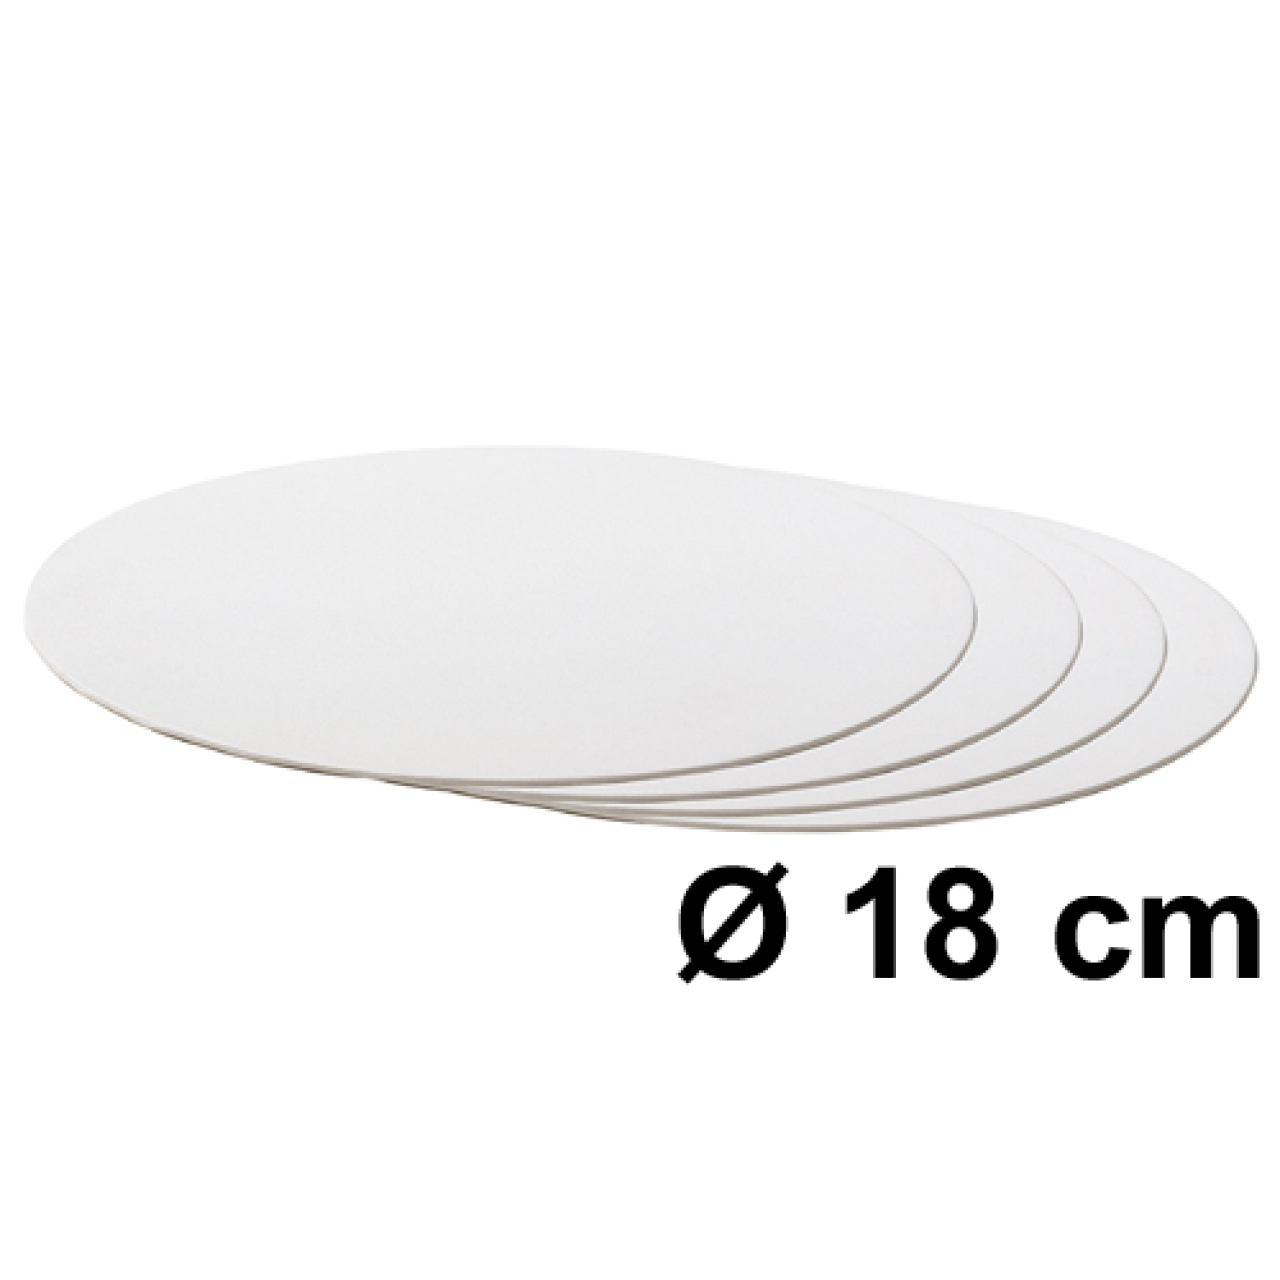 Tortenscheibe Weiß 18 cm